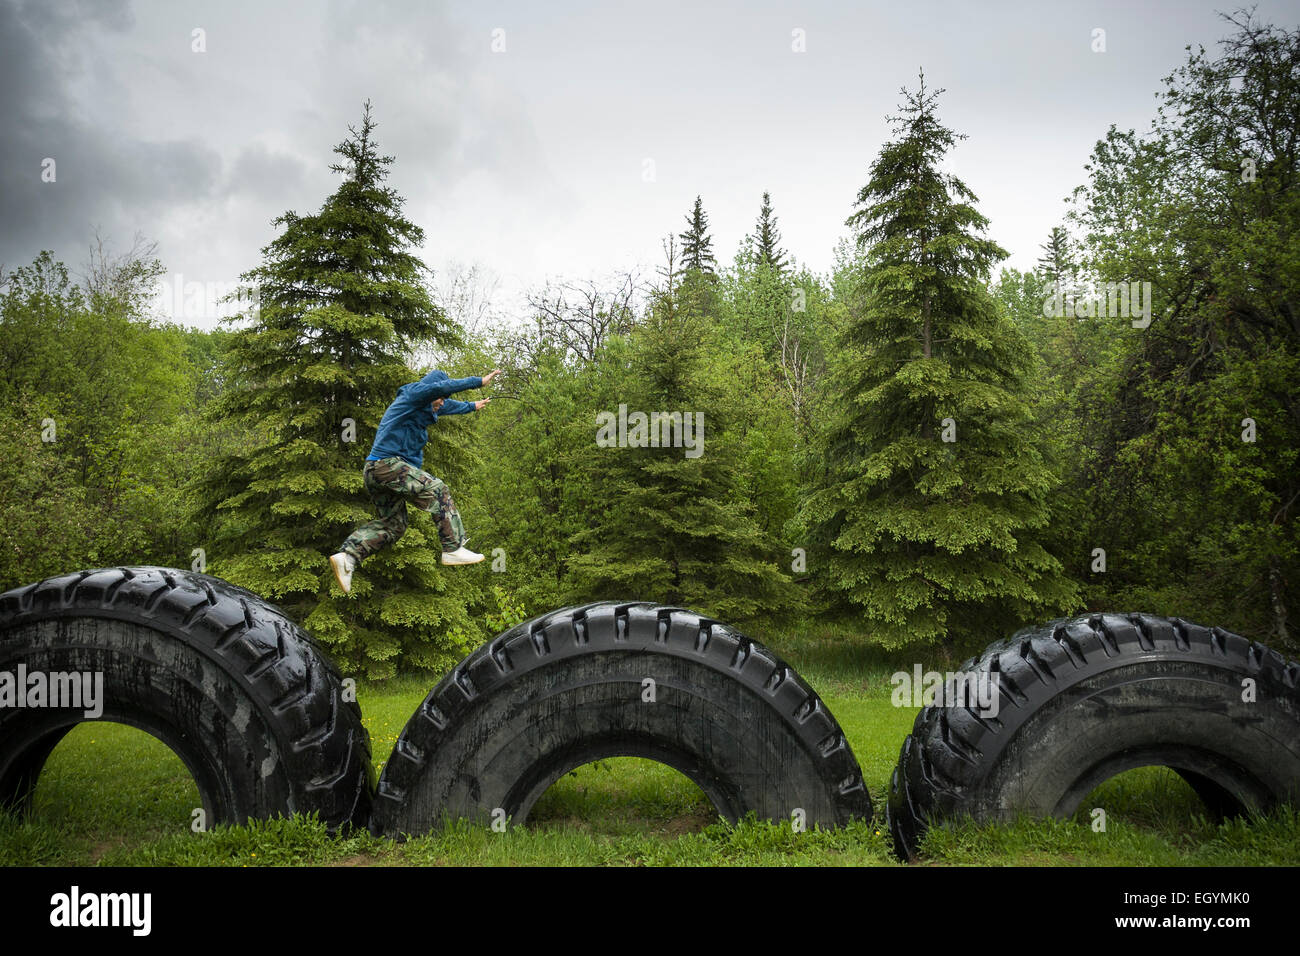 Un giovane di Anzac, Alberta, salti da gigante pneumatico al gigante pneumatico, i segnali dello sviluppo industriale della regione. Foto Stock